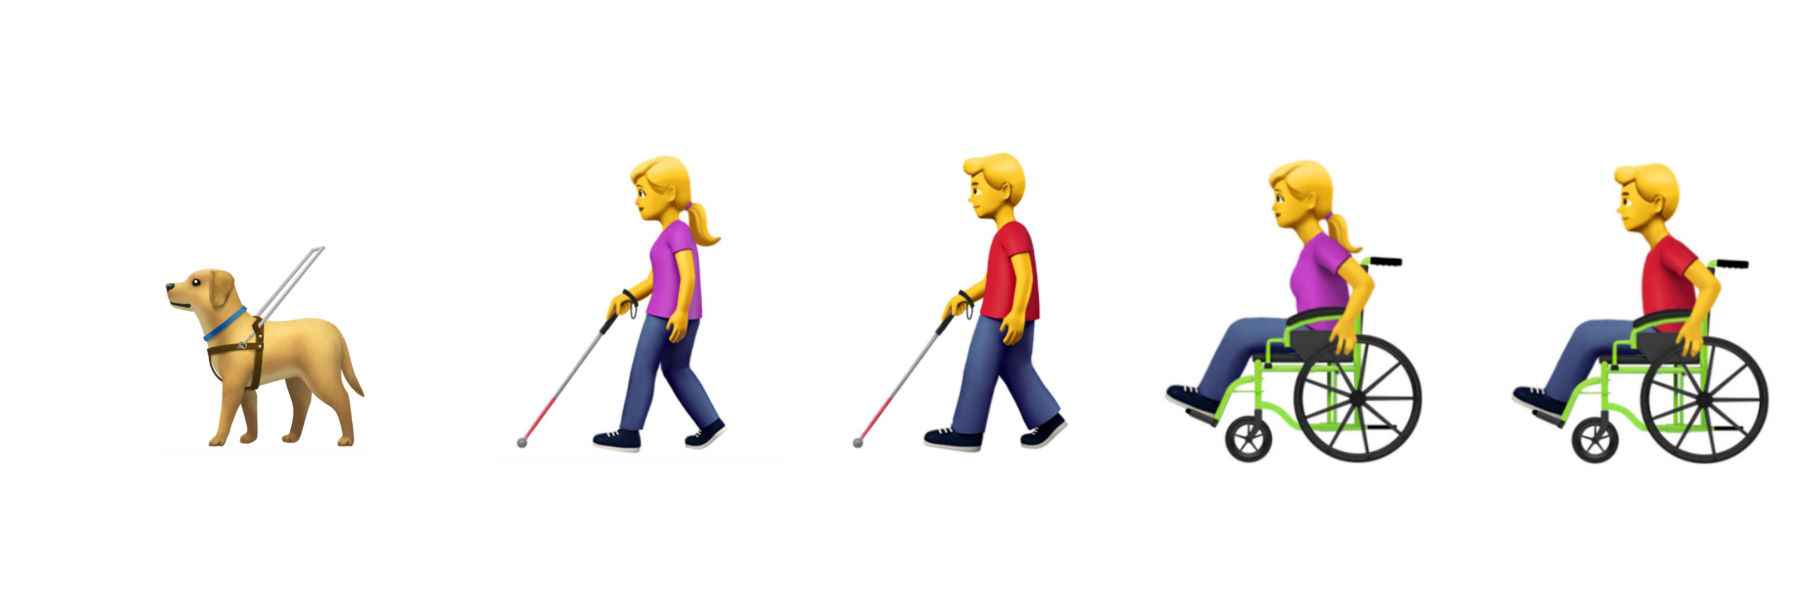 Emojis de un perro guía, de una chica y un chico con discapacidad visual y de una chica y un chico en silla de ruedas.